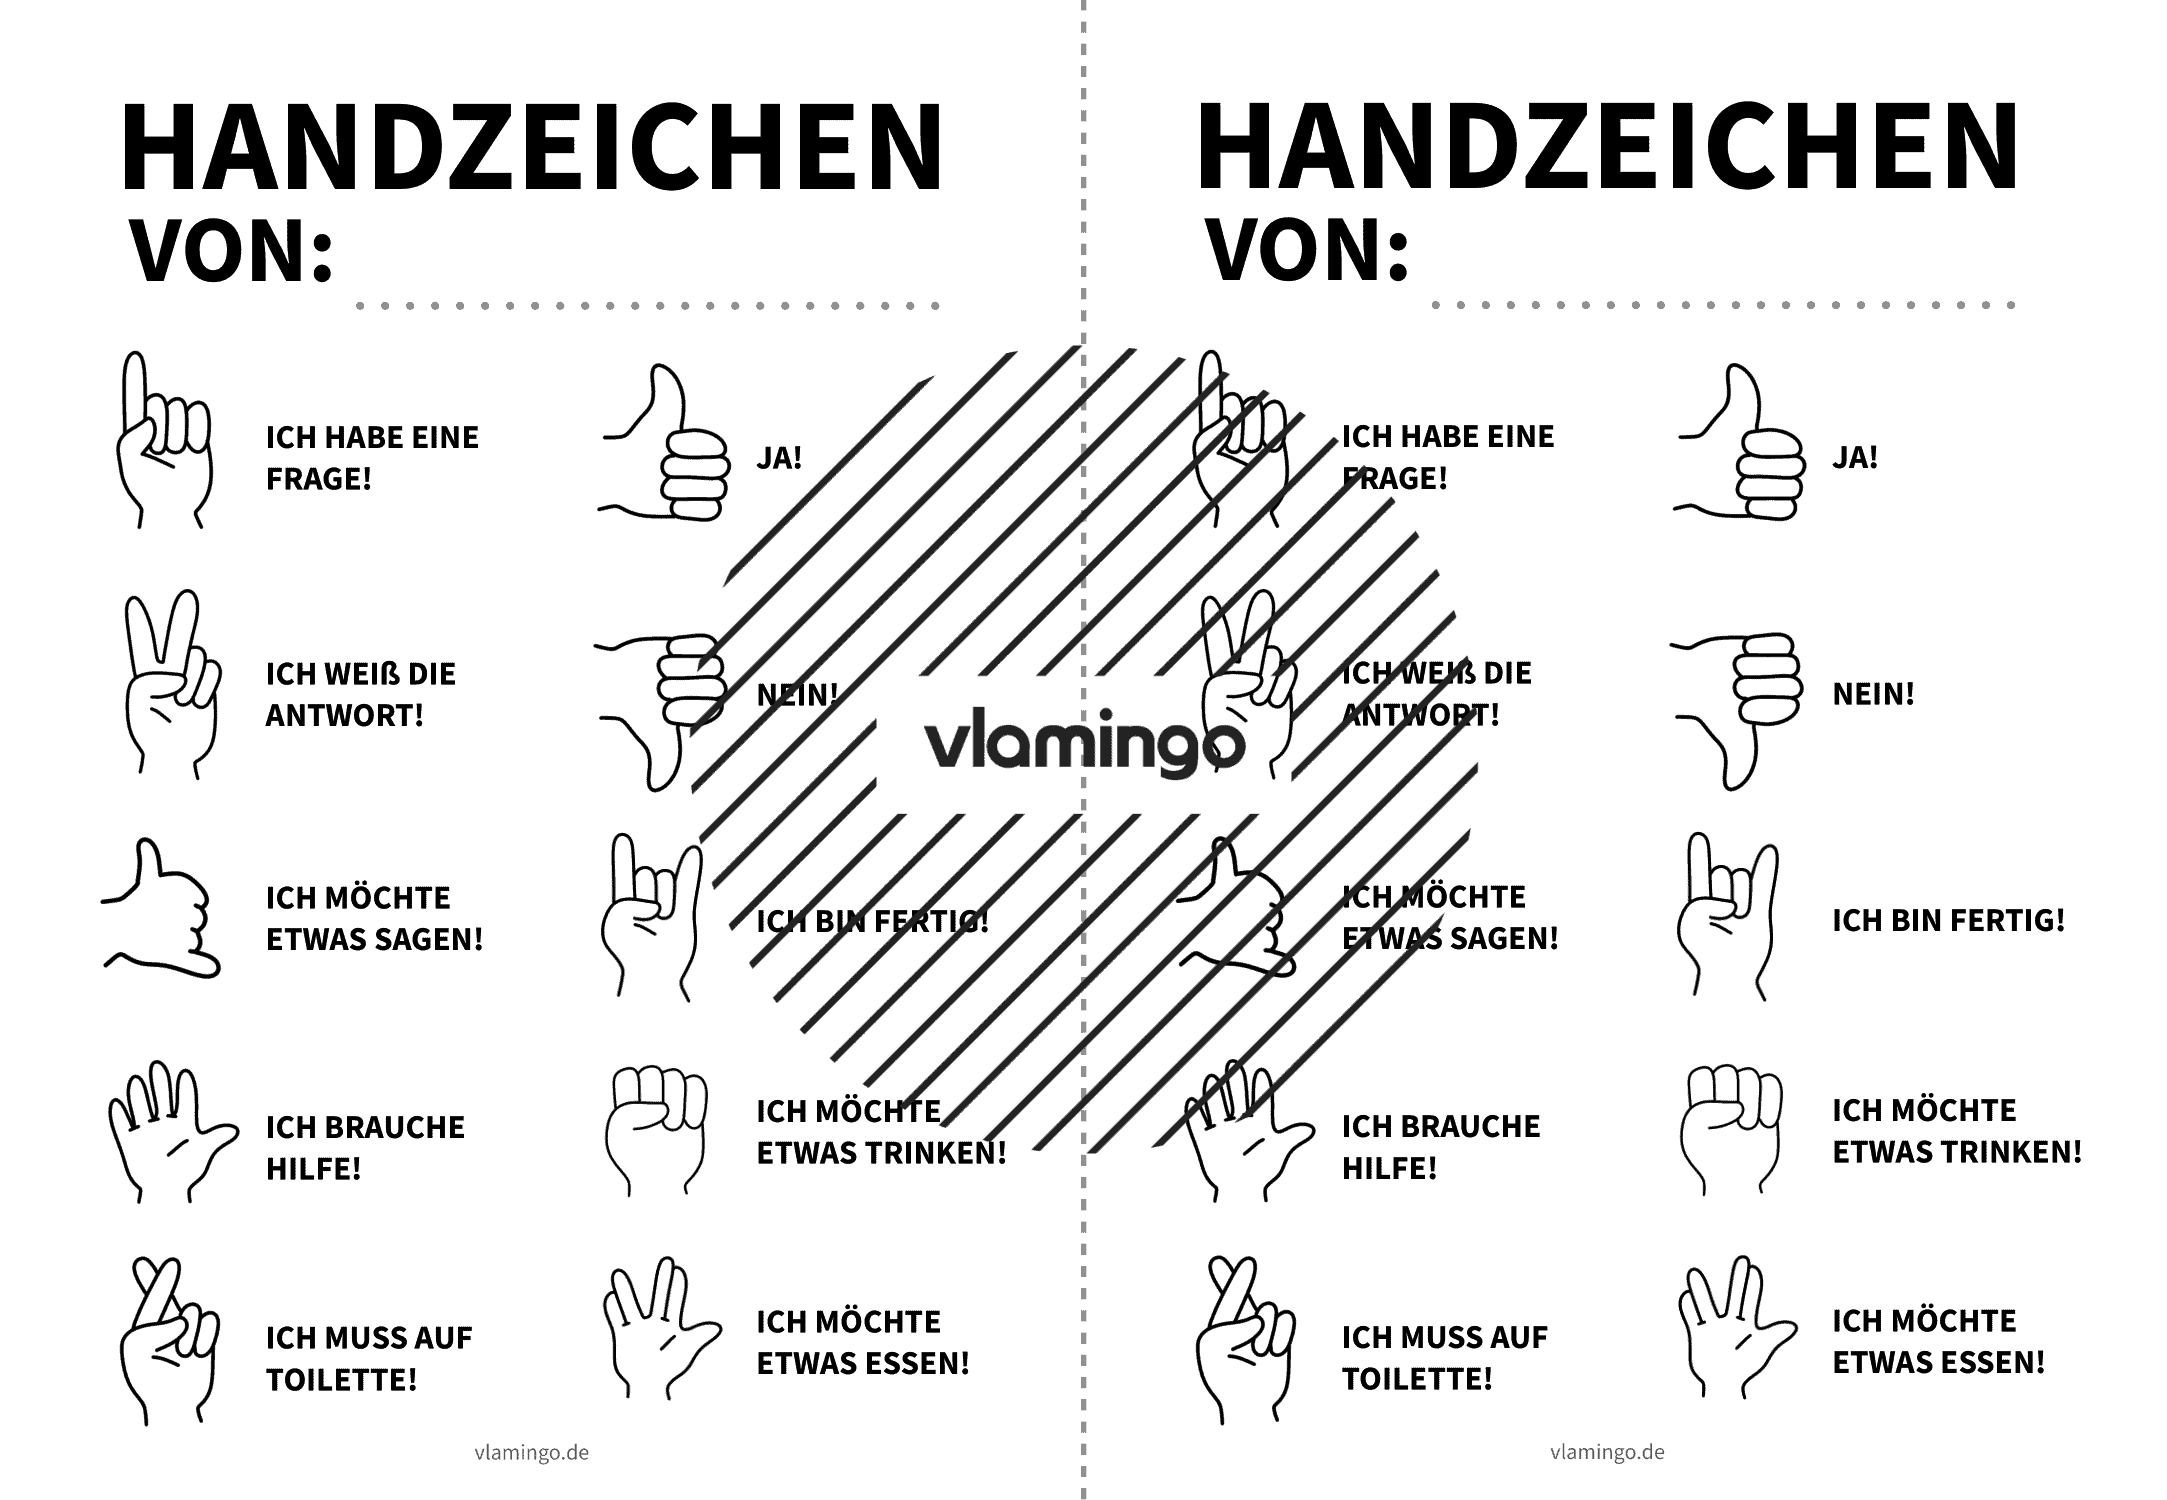 Handzeichen im Unterricht - Merkblatt für Schüler*innen